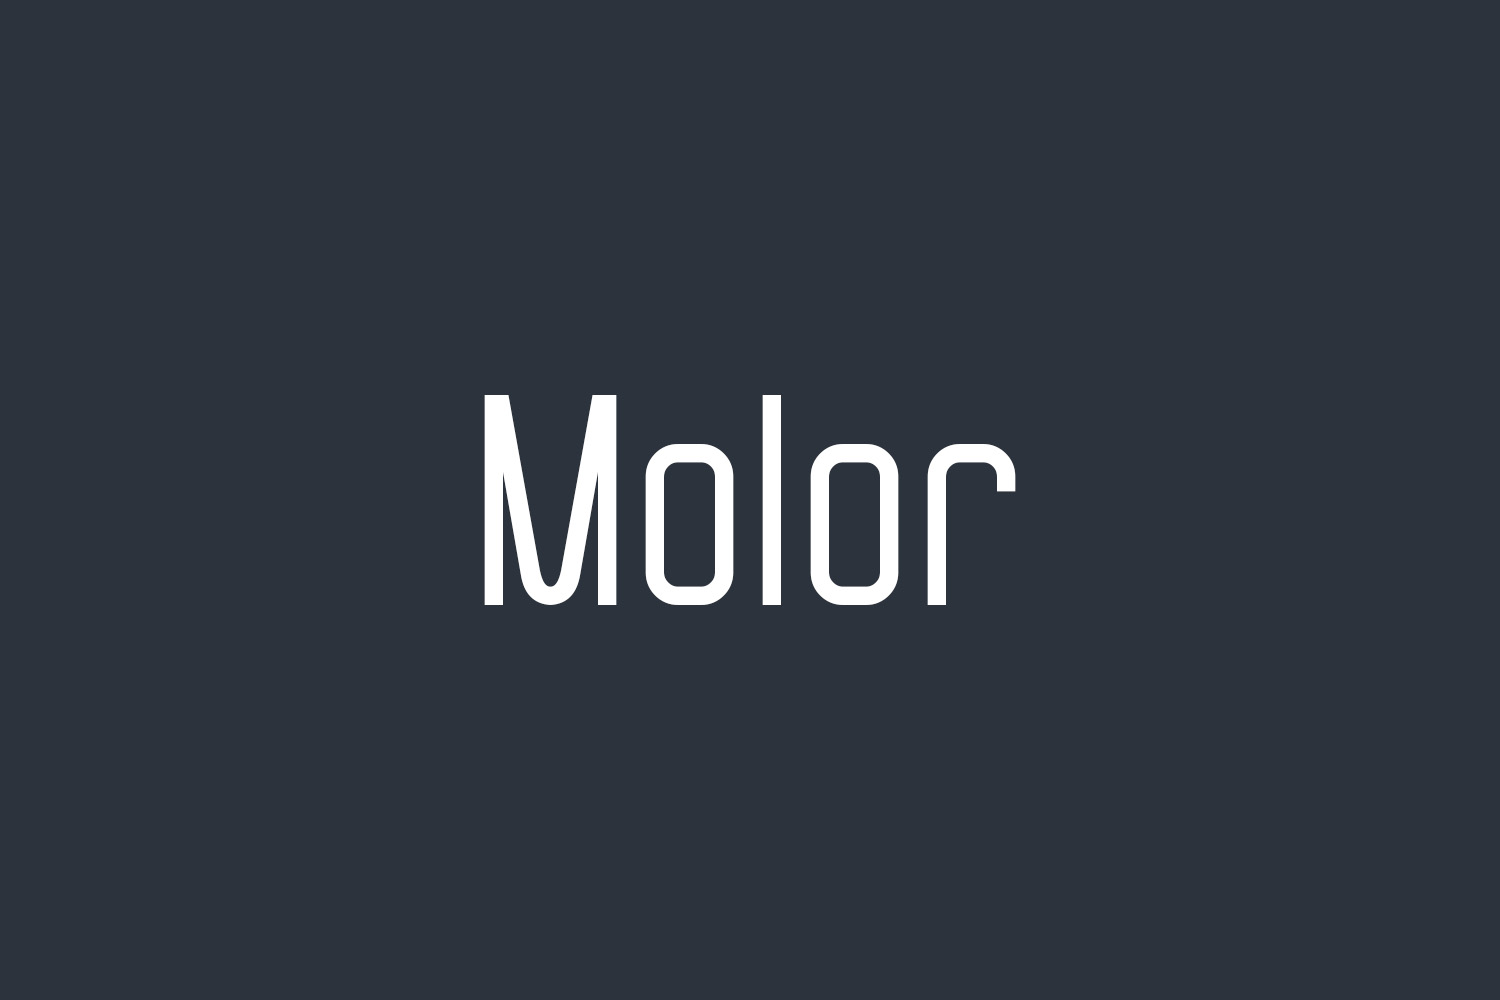 Molor Free Font